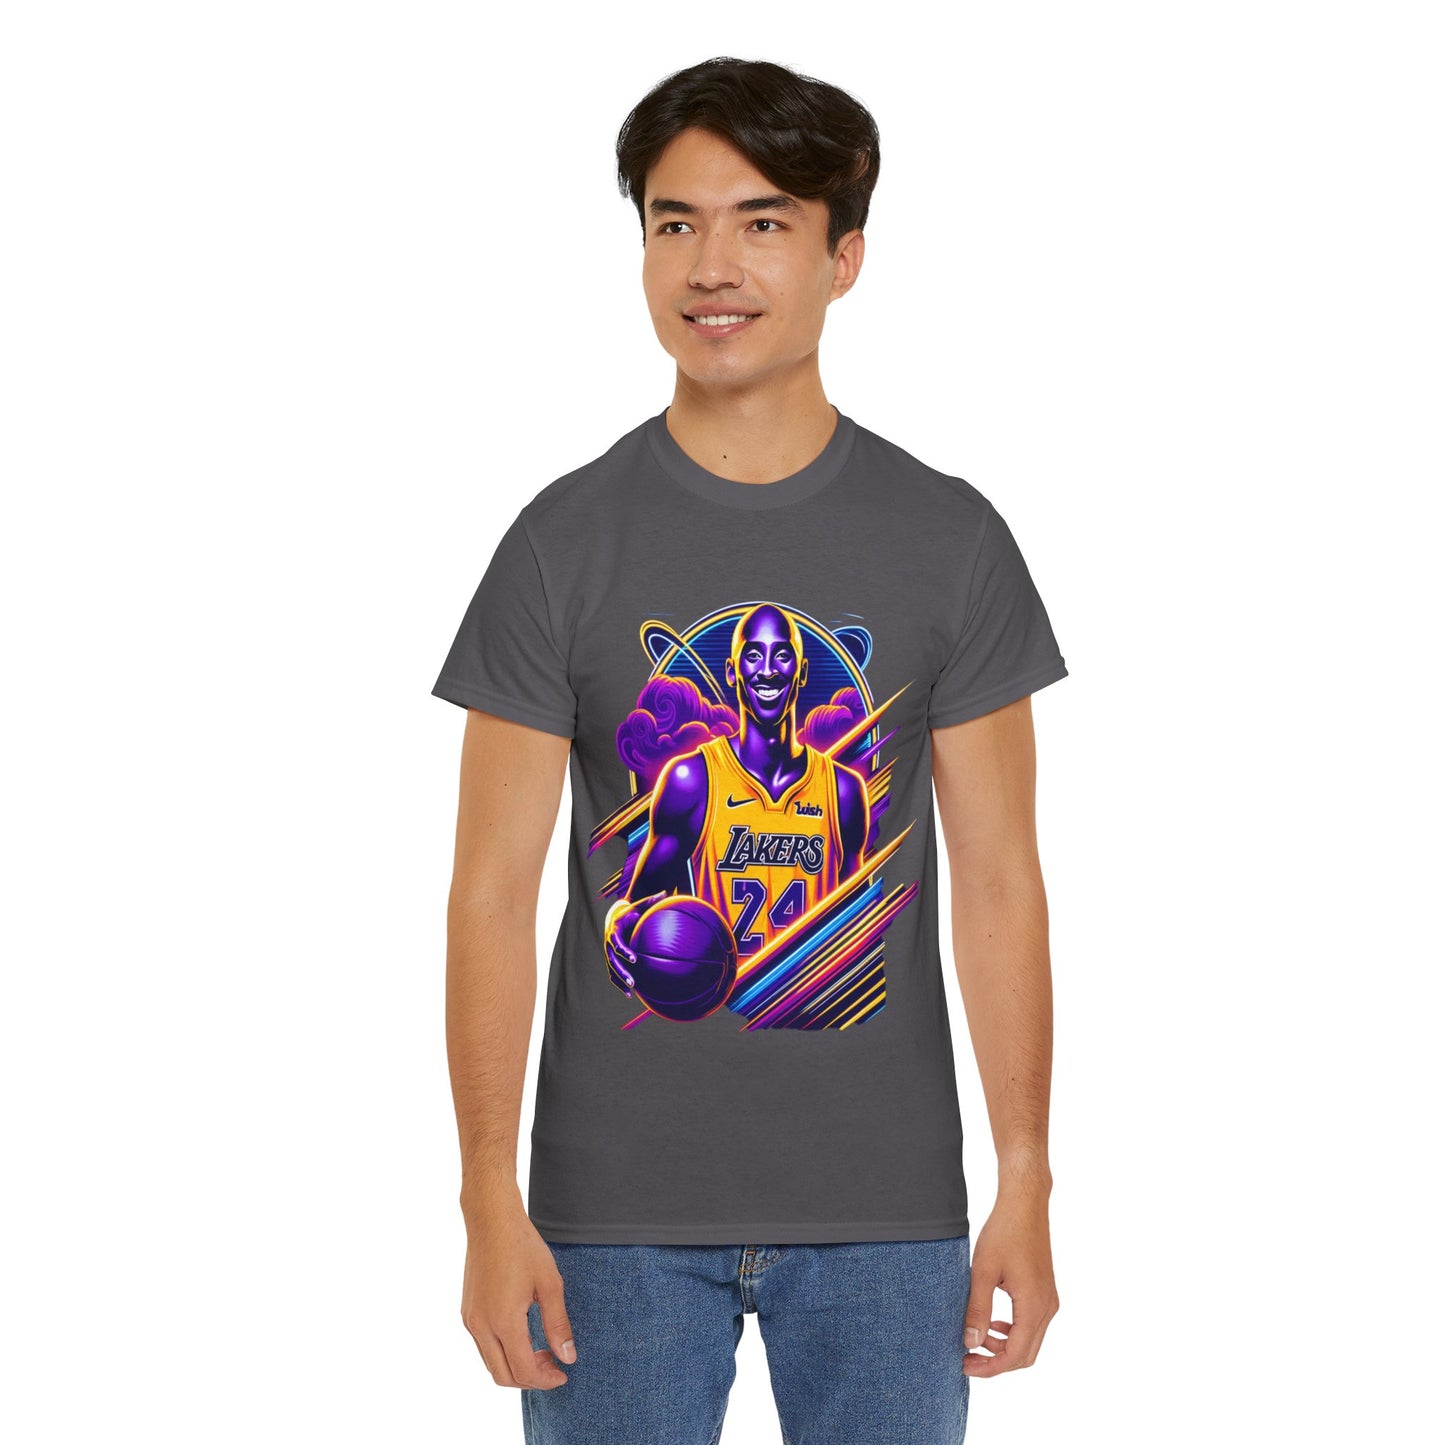 Y.M.L.Y. "Kobe Bryant Black Mamba" T-Shirt Los Angeles Lakers NBA Shirt